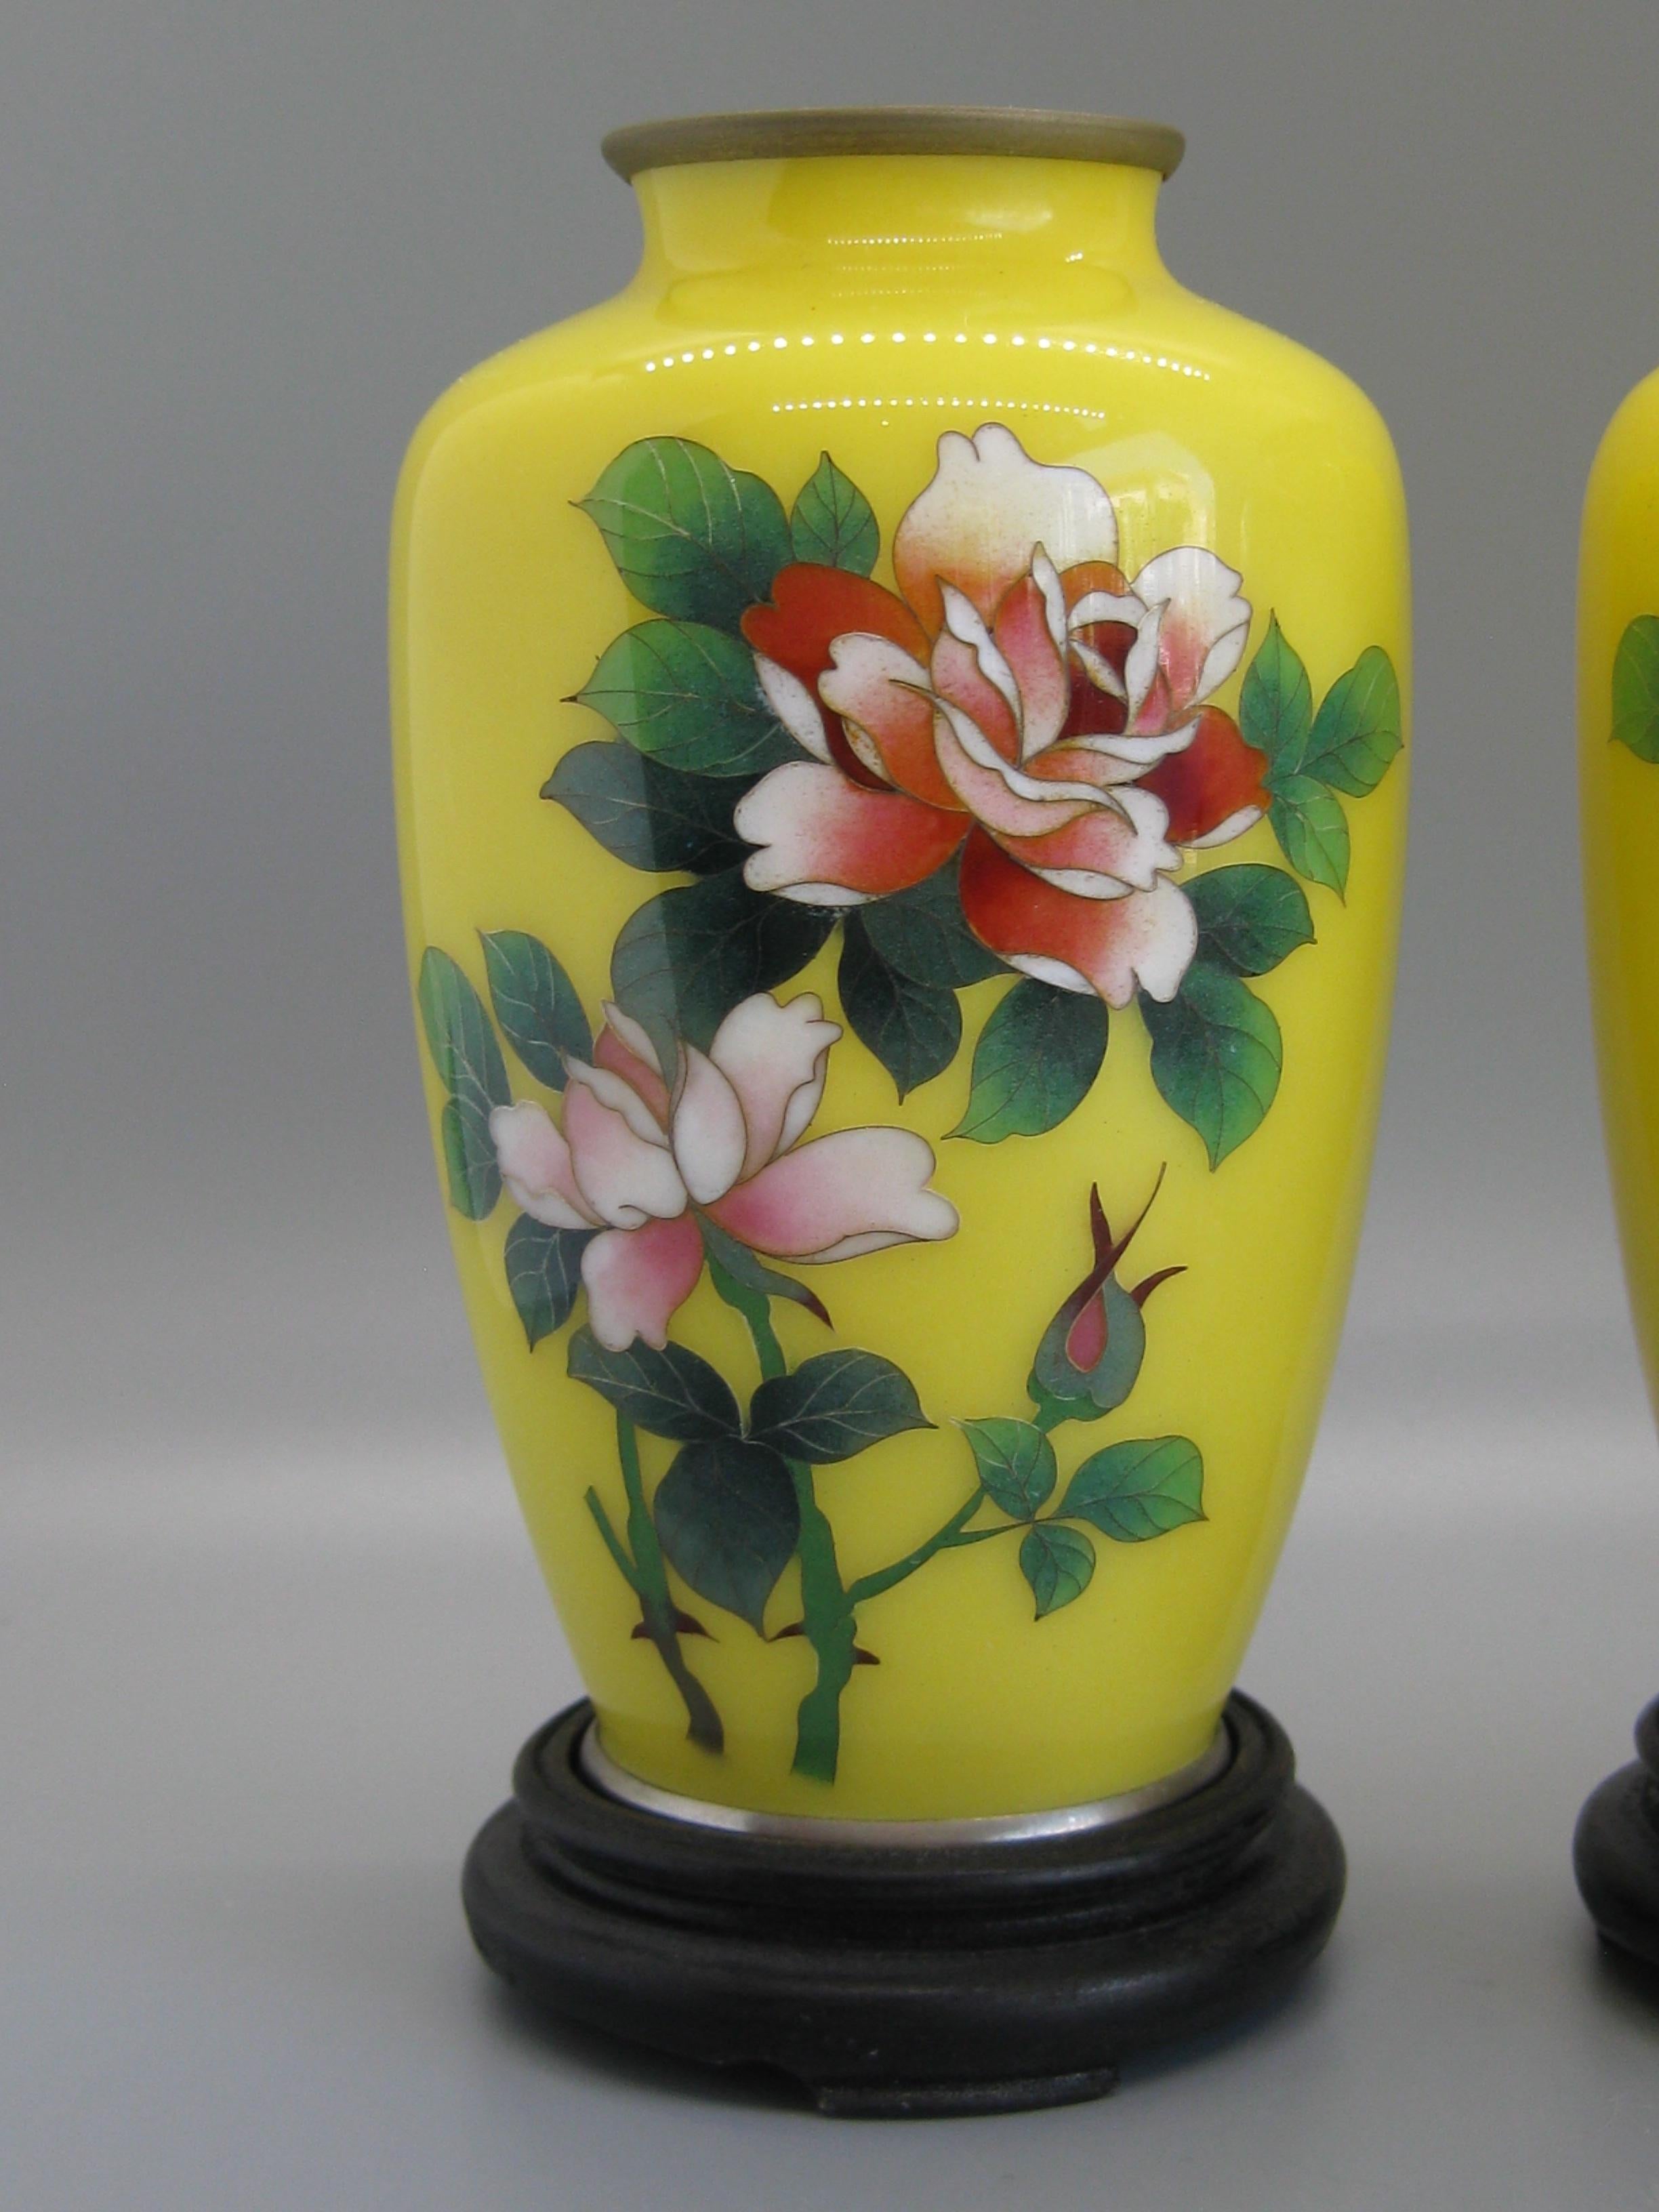 Paire de vases anciens en émail cloisonné japonais datant du début des années 1900. Les deux sont marqués par l'artiste sur le fond. Elles sont attribuées au maître artiste Ando Jubei. Belles roses colorées sur fond jaune. Ils sont livrés avec leurs